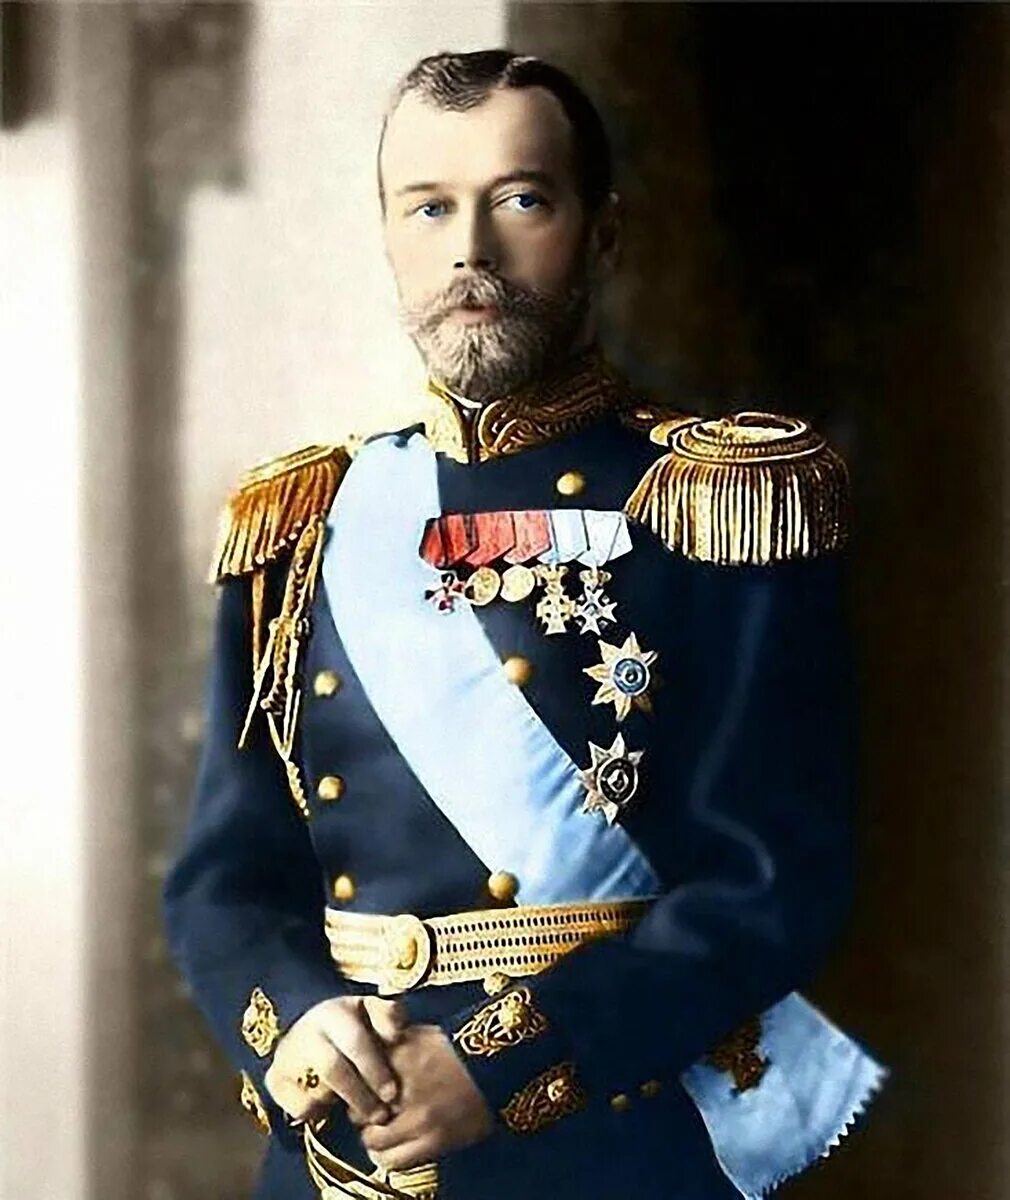 Российский императорский